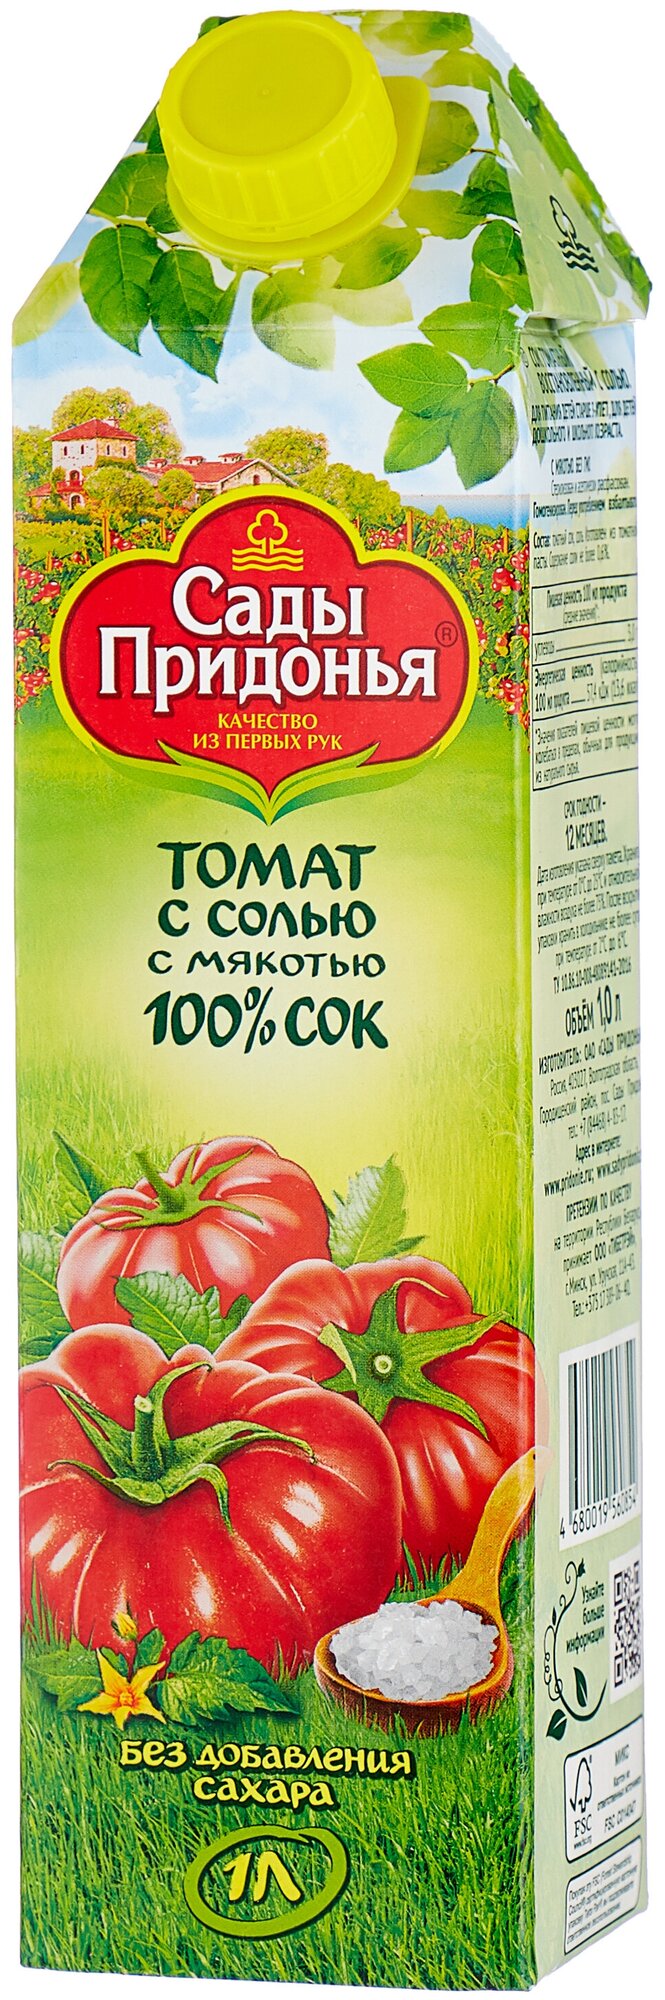 Сок Сады Придонья Томат с солью, без сахара, 1 л - фотография № 8